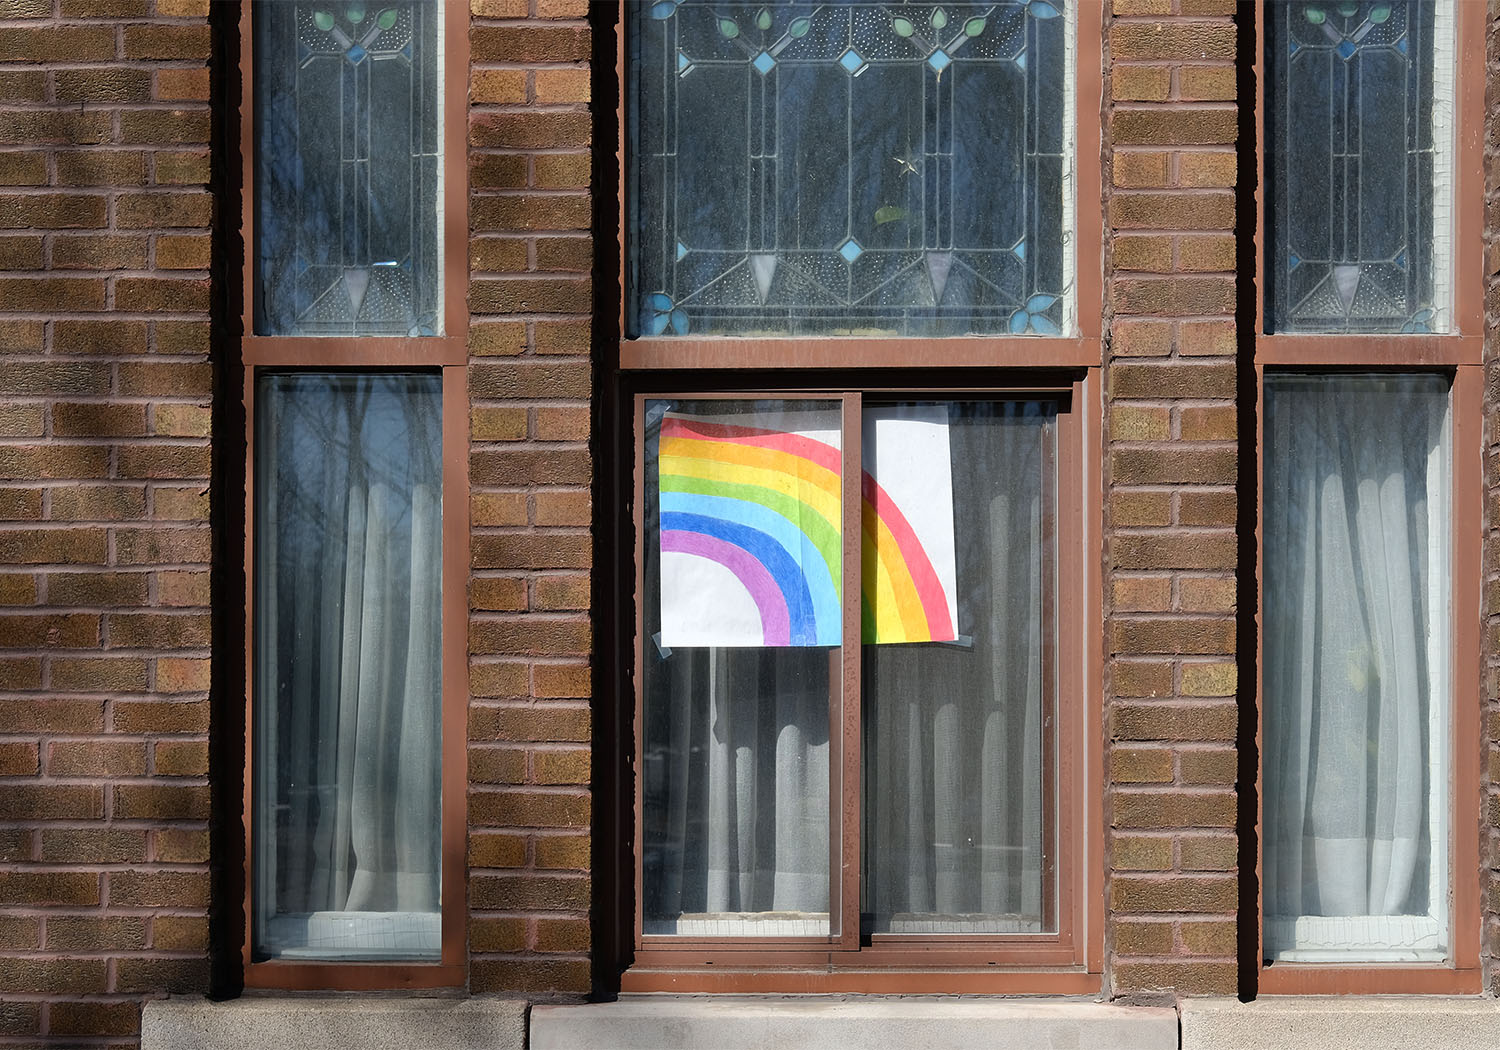 A hand-drawn rainbow in a window.